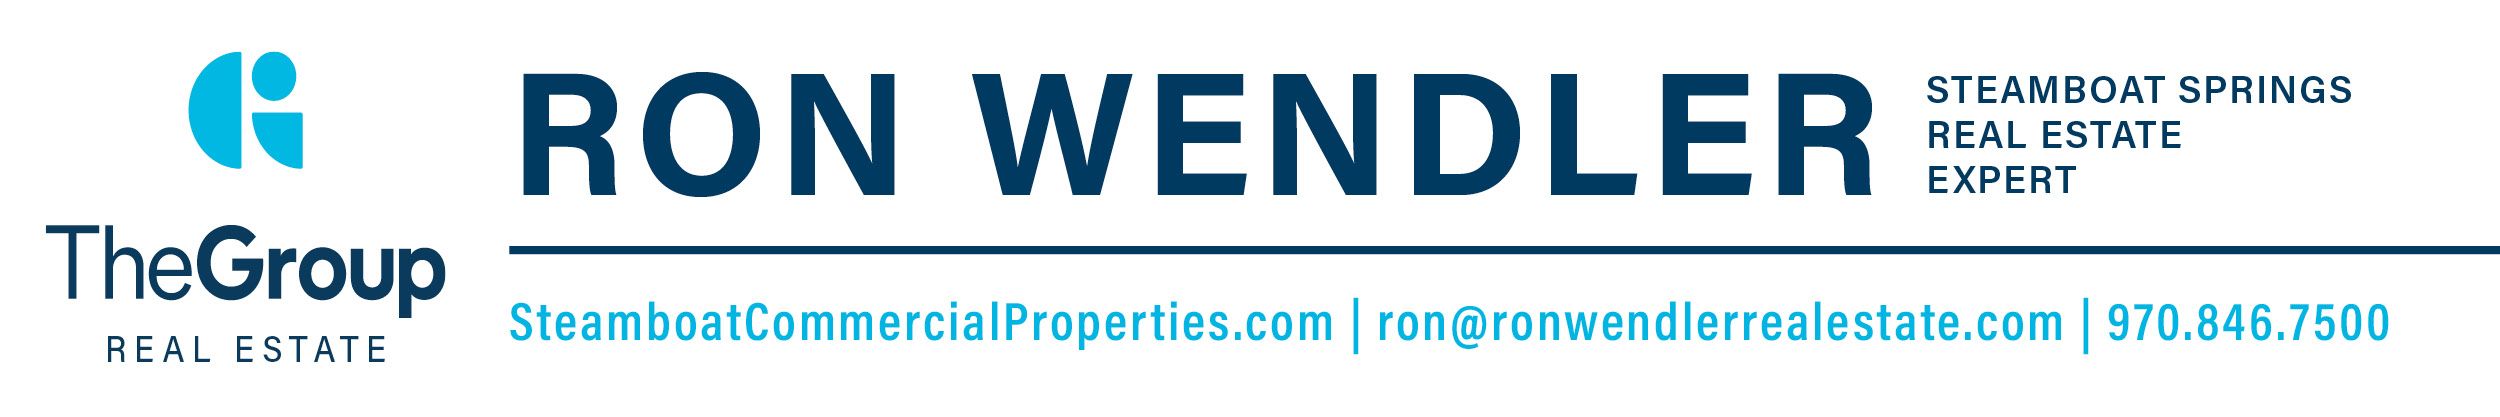 Ron Wendler Real Estate